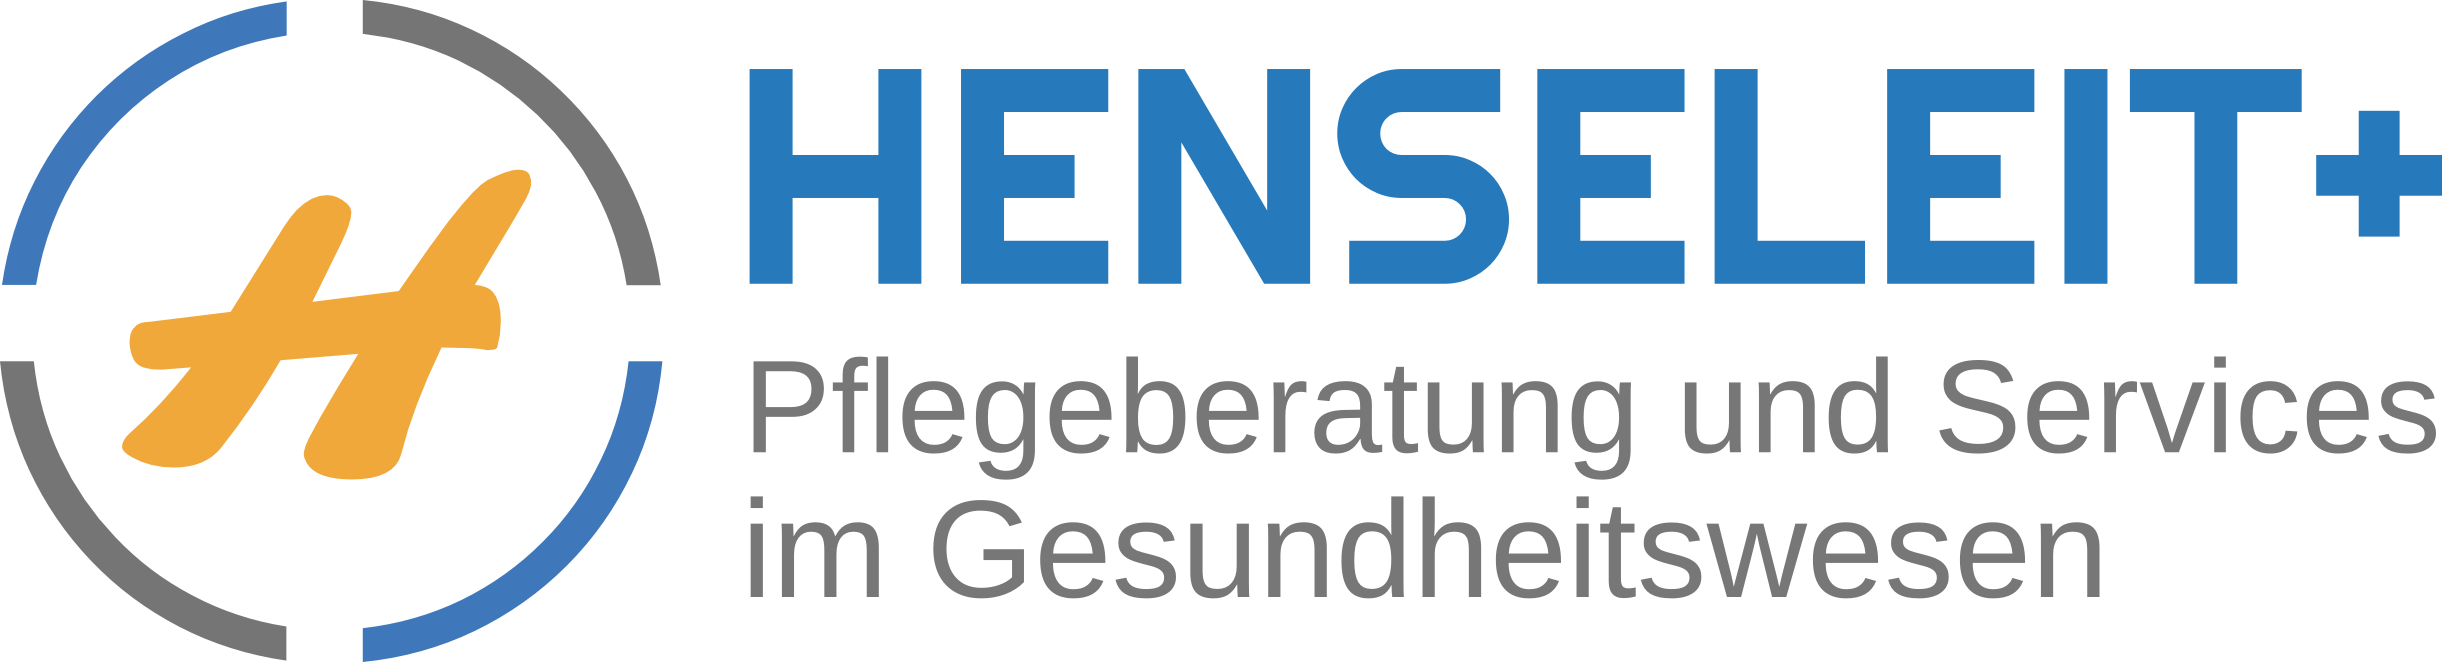 HENSELEIT+, Nina und Jens Henseleit GbR Logo